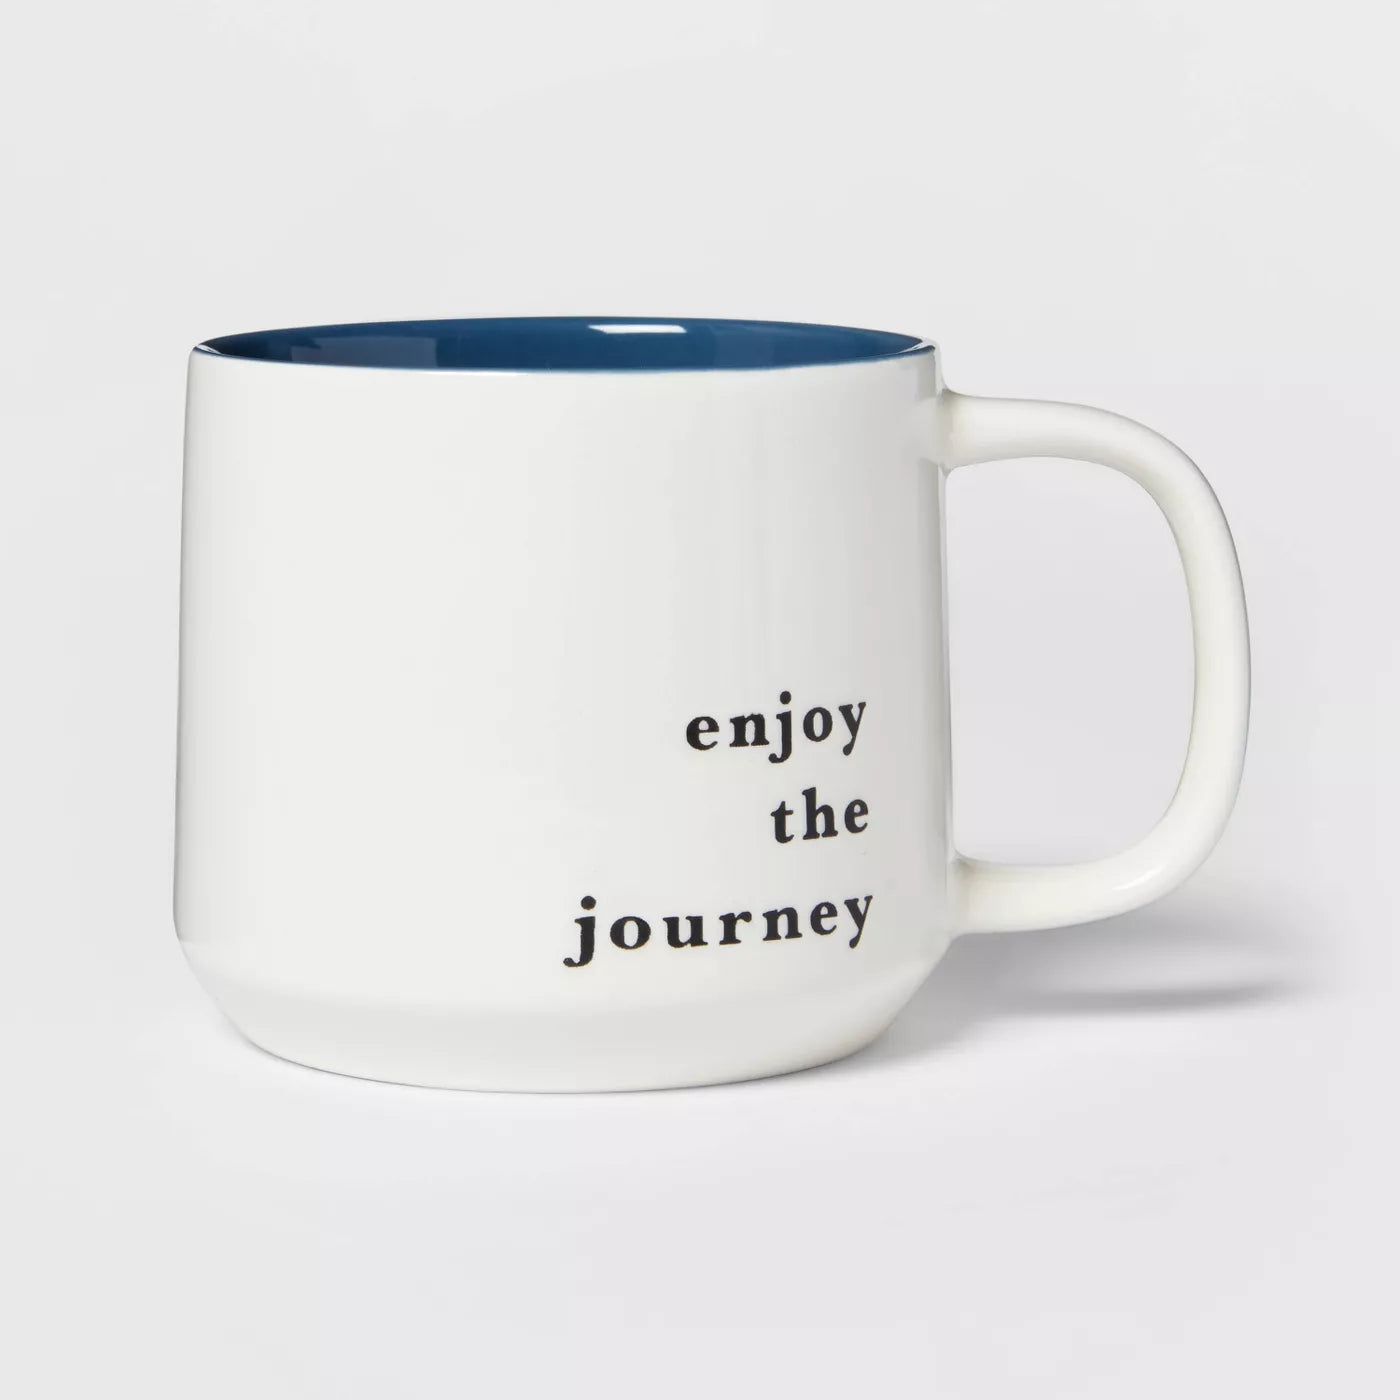 Mug: enjoy the journey